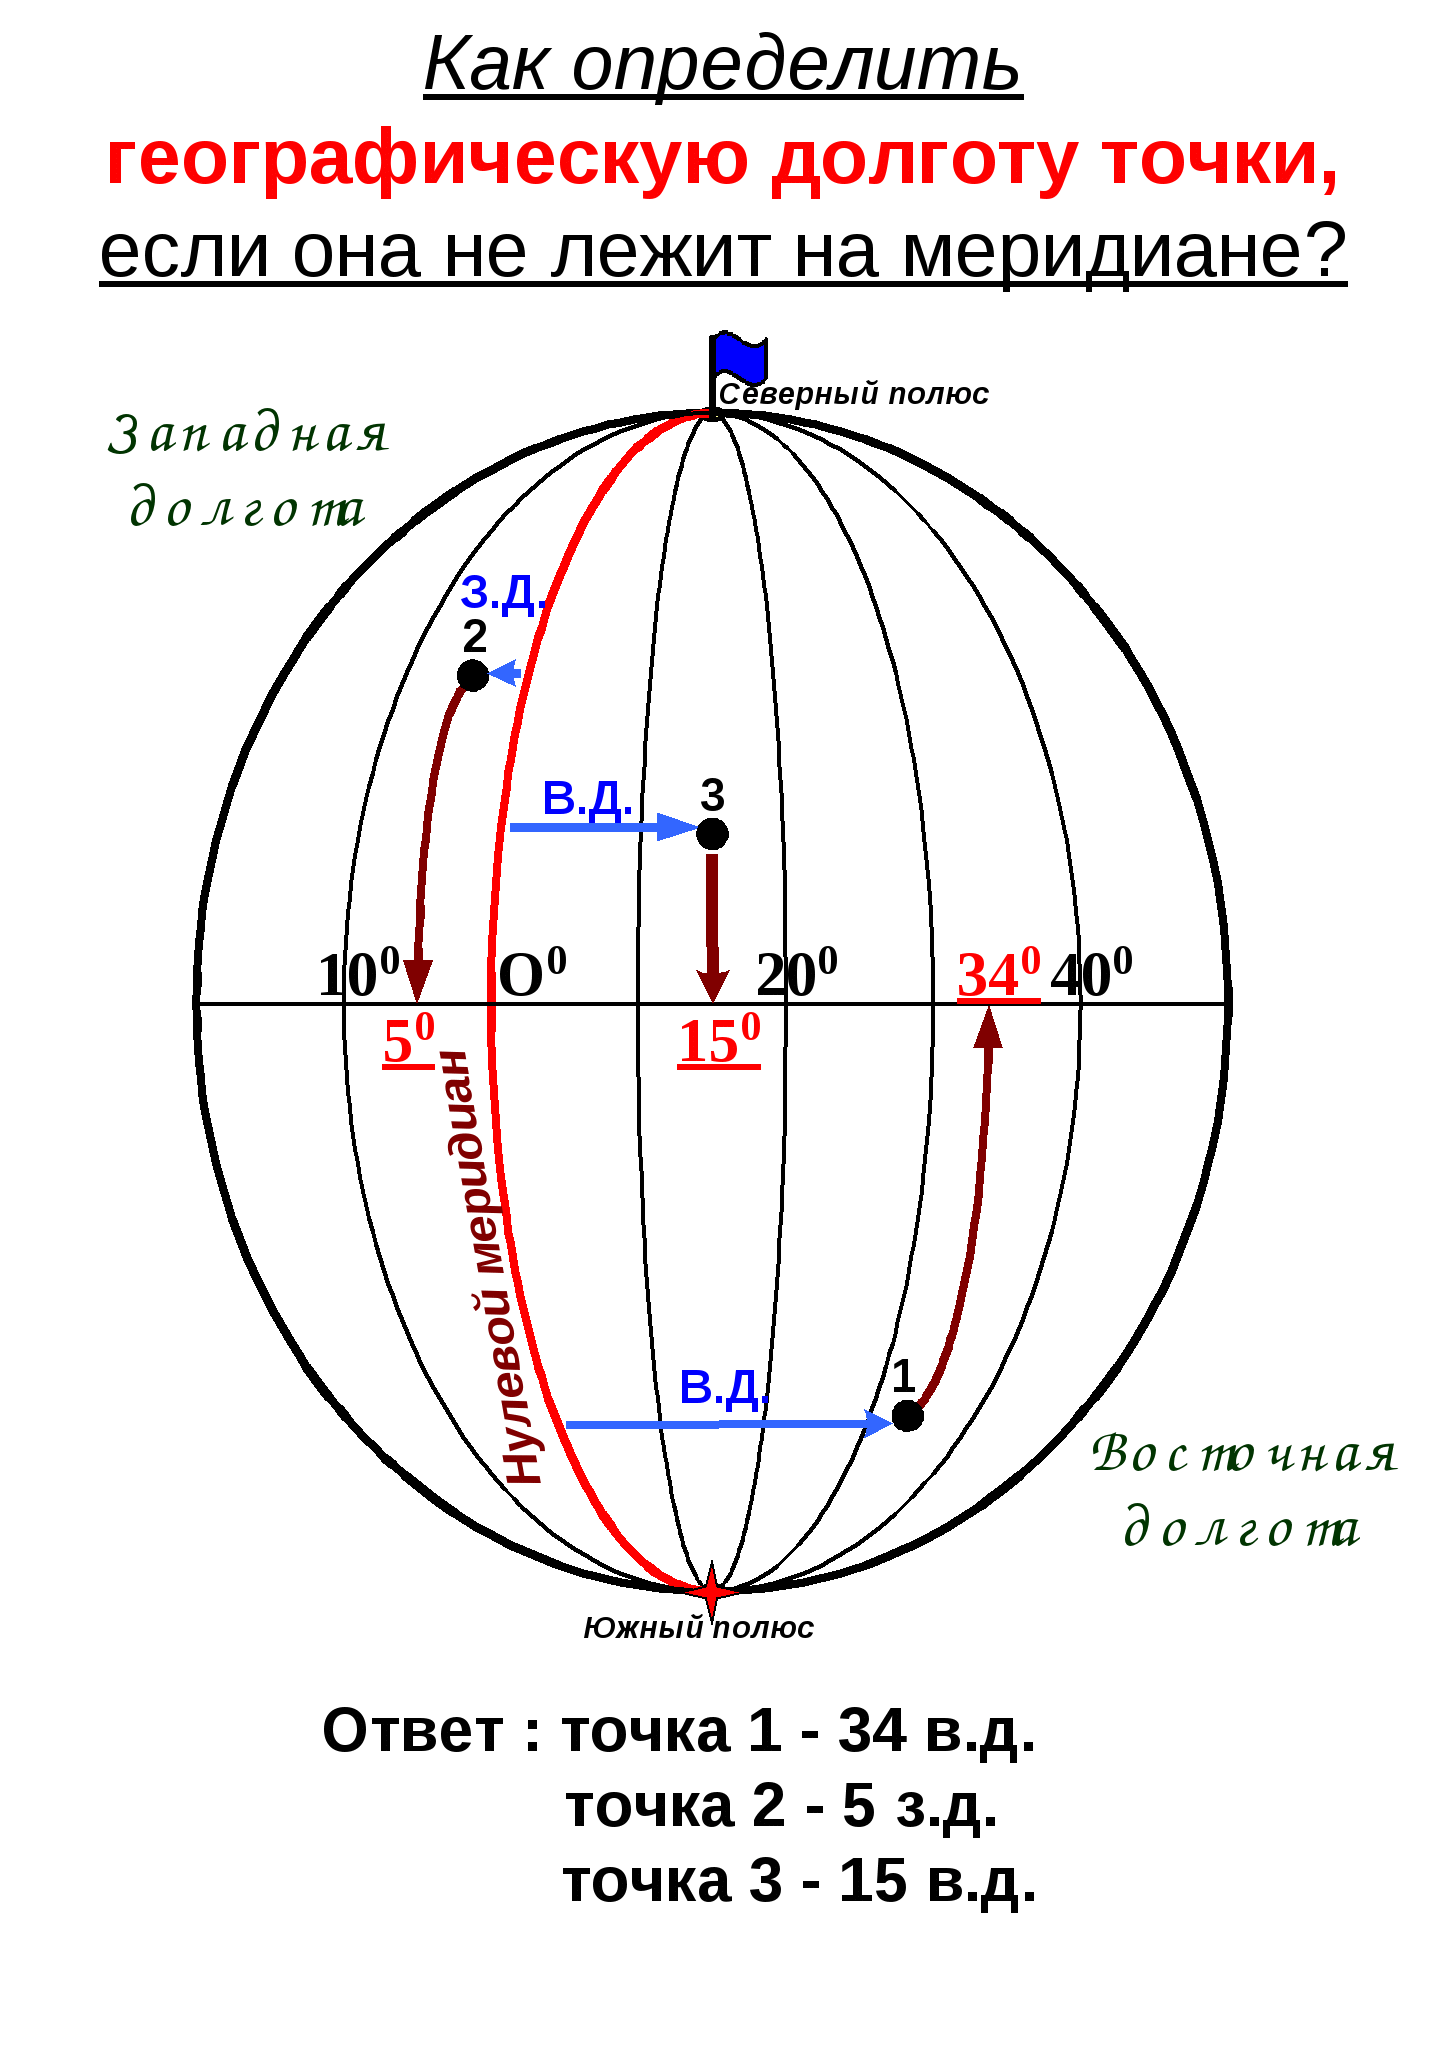 Конспект по географии Определение протяженности объектов с севера на юг с помощью градусной сетки